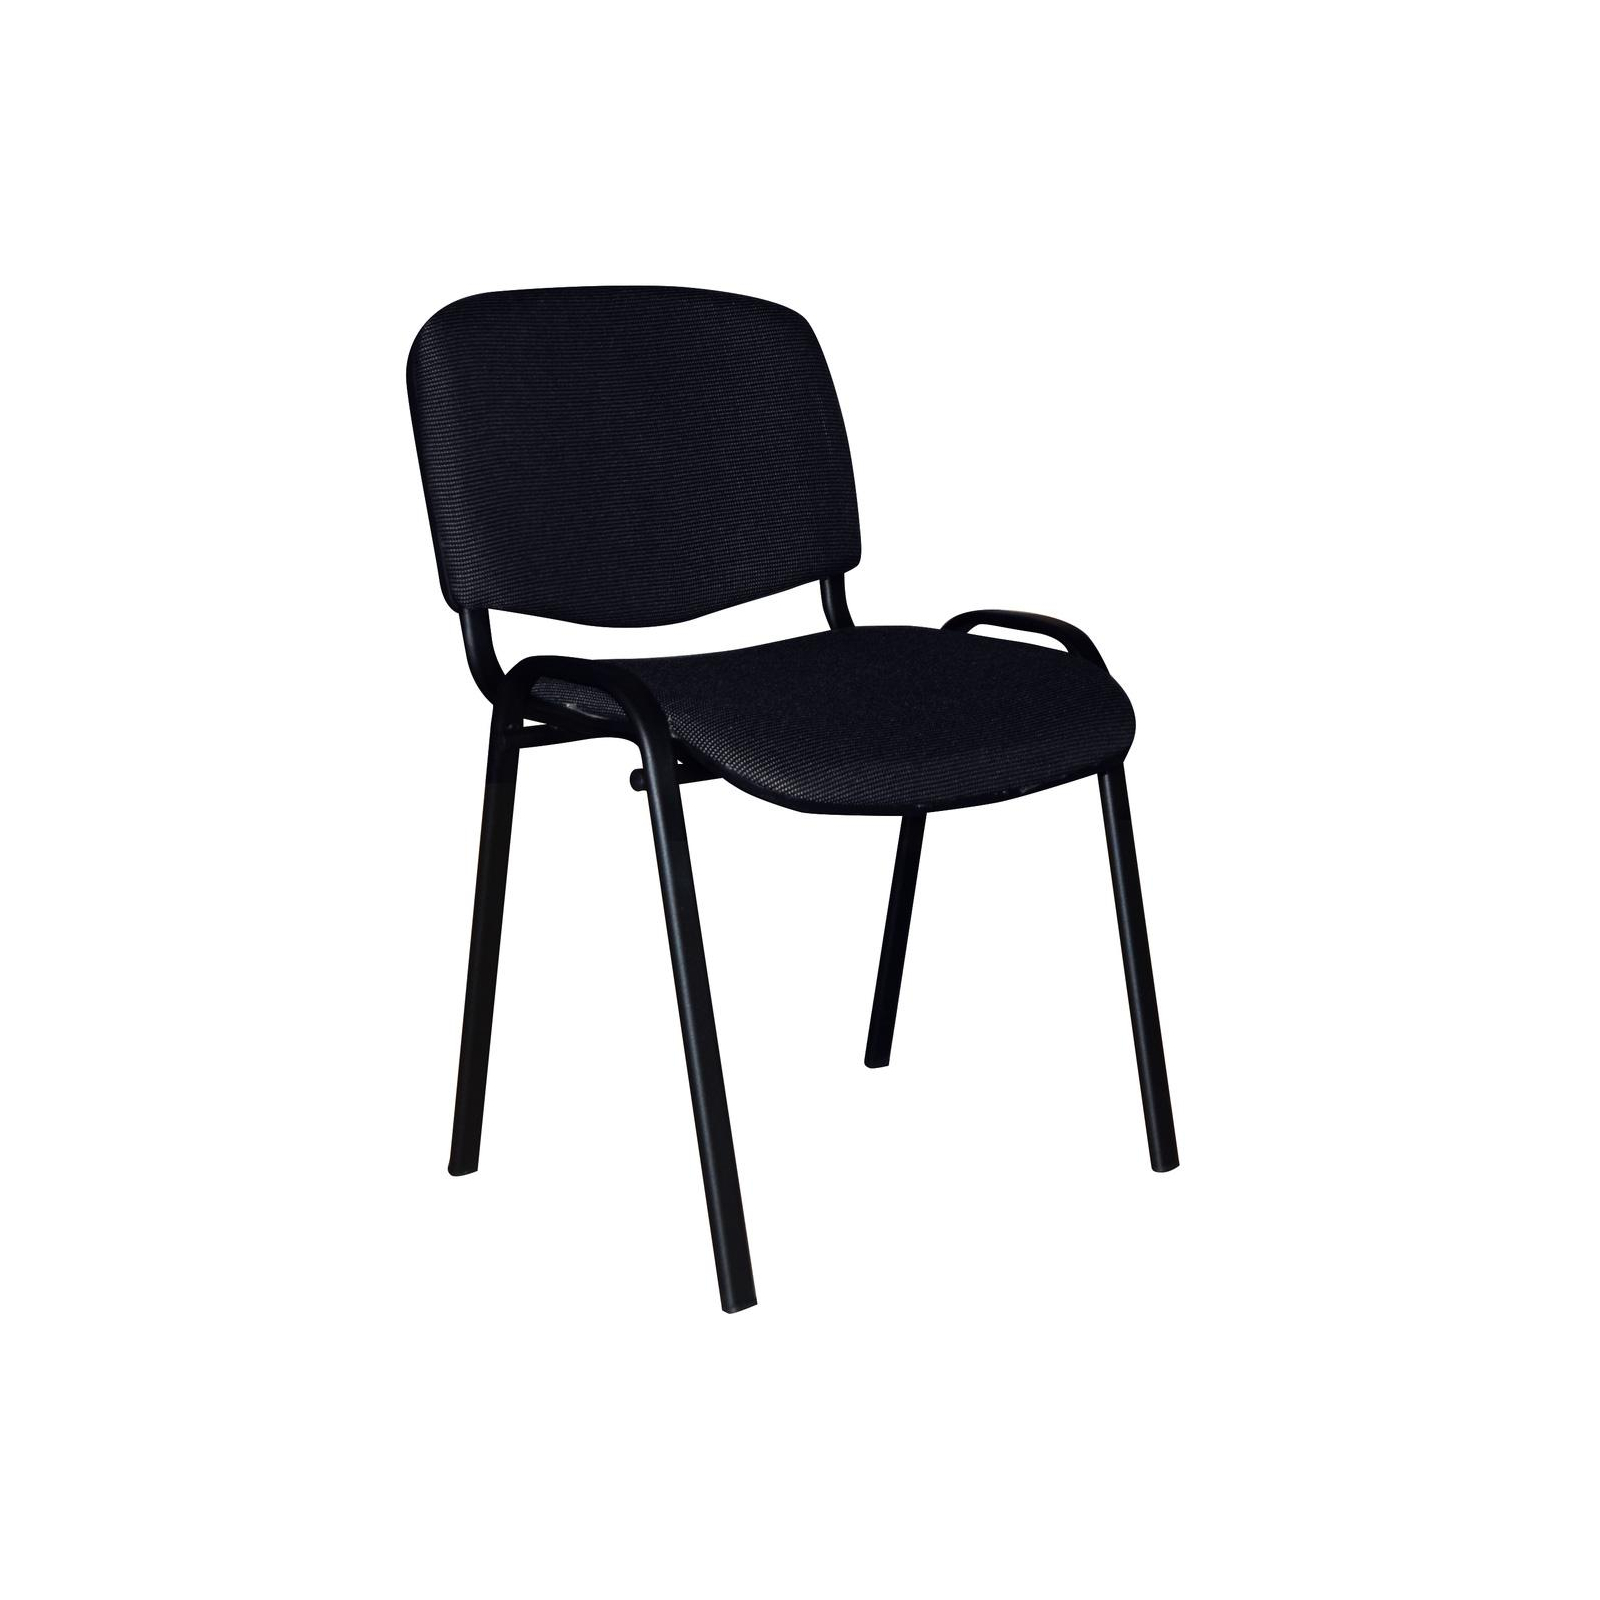 Офісний стілець Примтекс плюс ISO black С-26